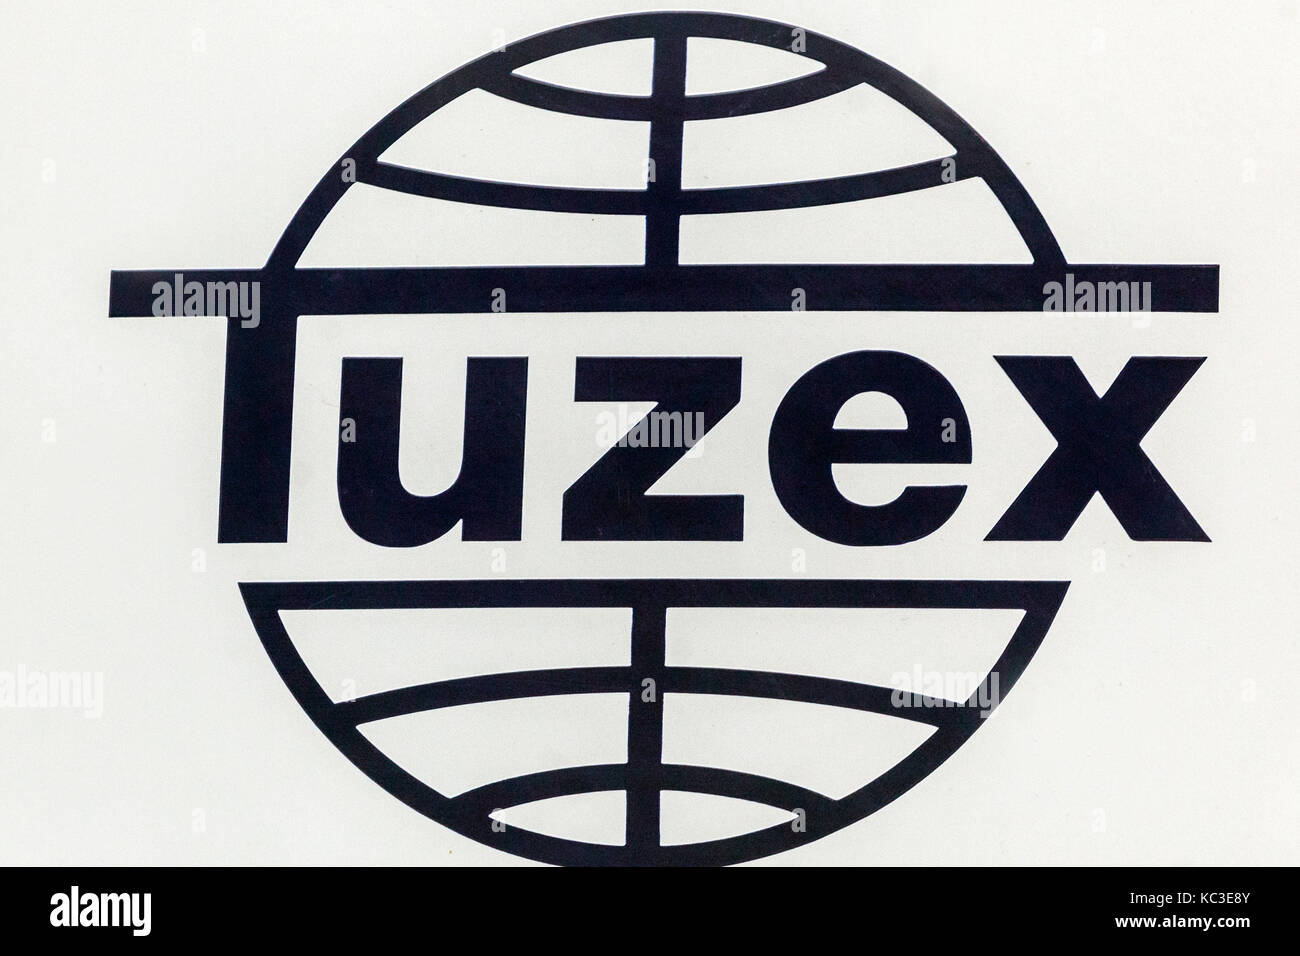 Tuzex, Logo, während der kommunistischen Herrschaft in der Tschechoslowakei, wurde ein Netzwerk von Geschäften, in denen es möglich war, harte Währung zu verwenden Stockfoto